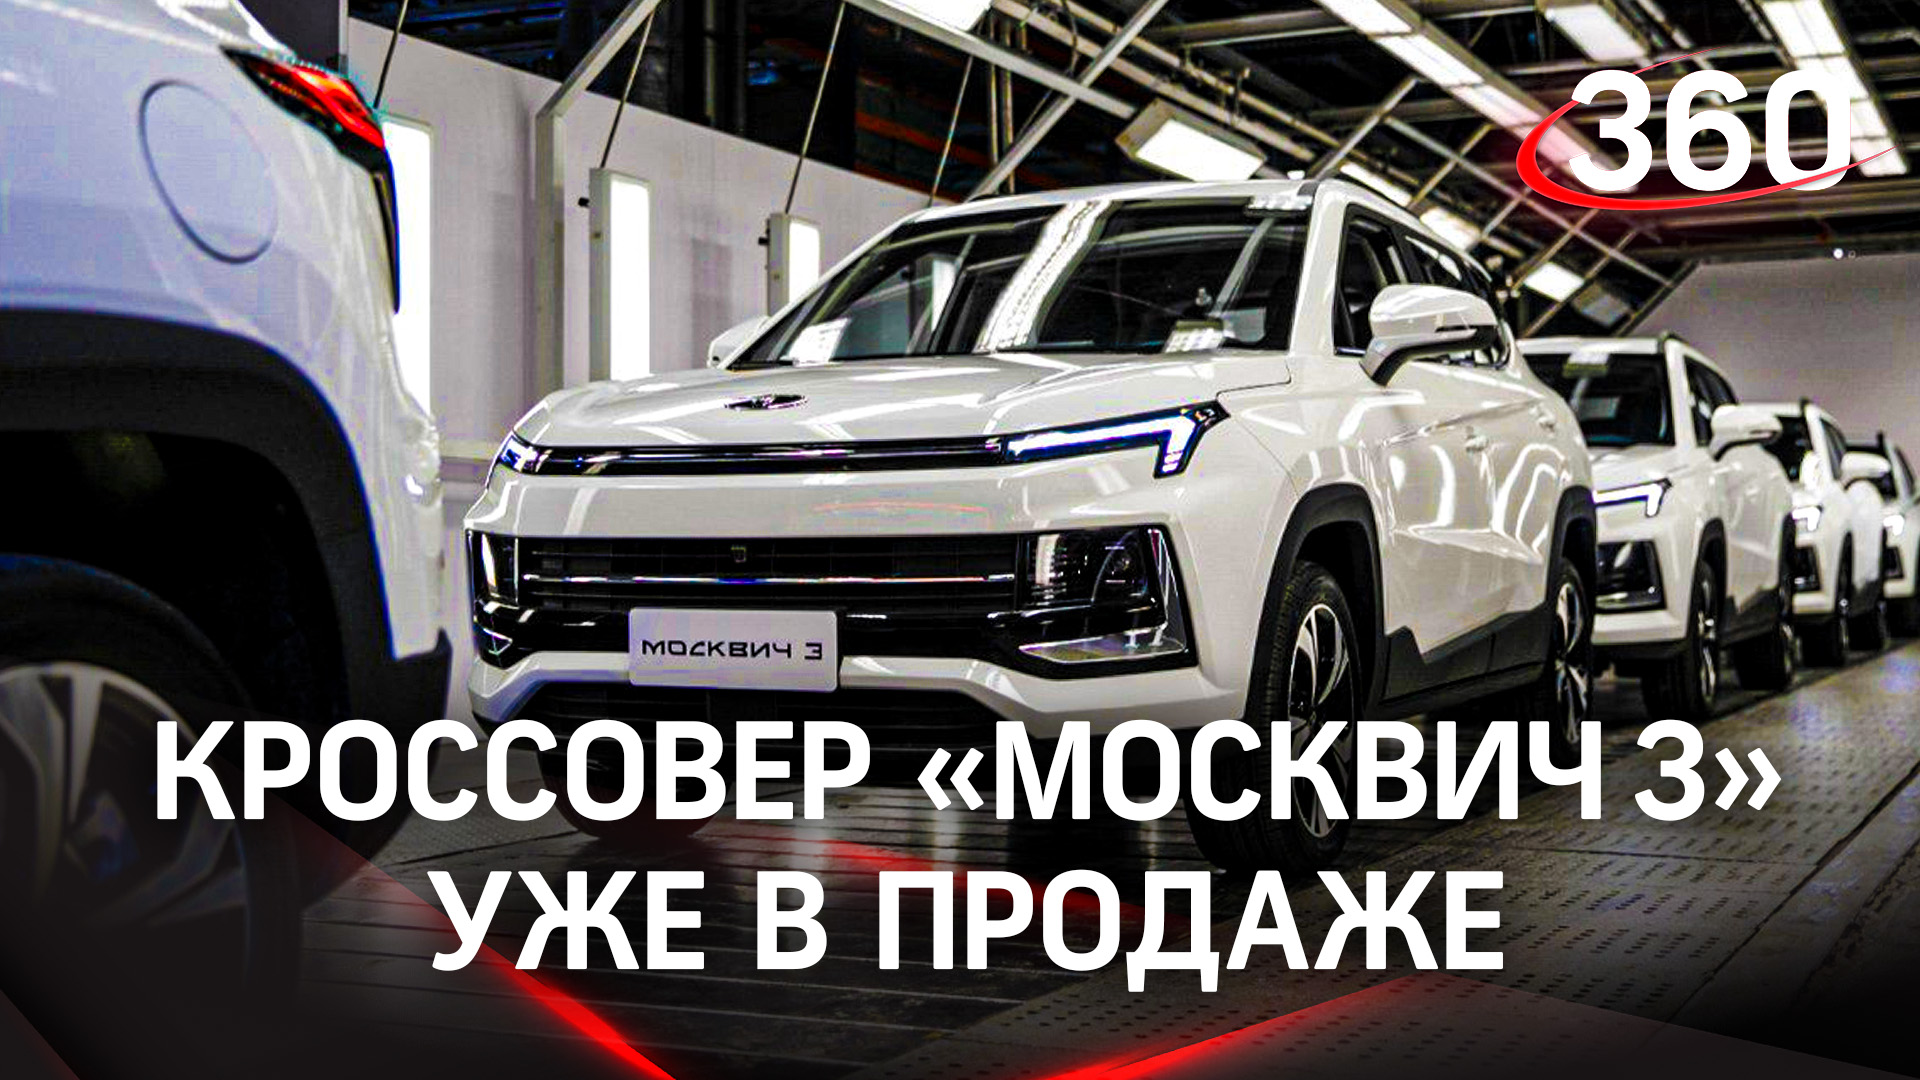 Кроссовер «Москвич 3» появился в продаже